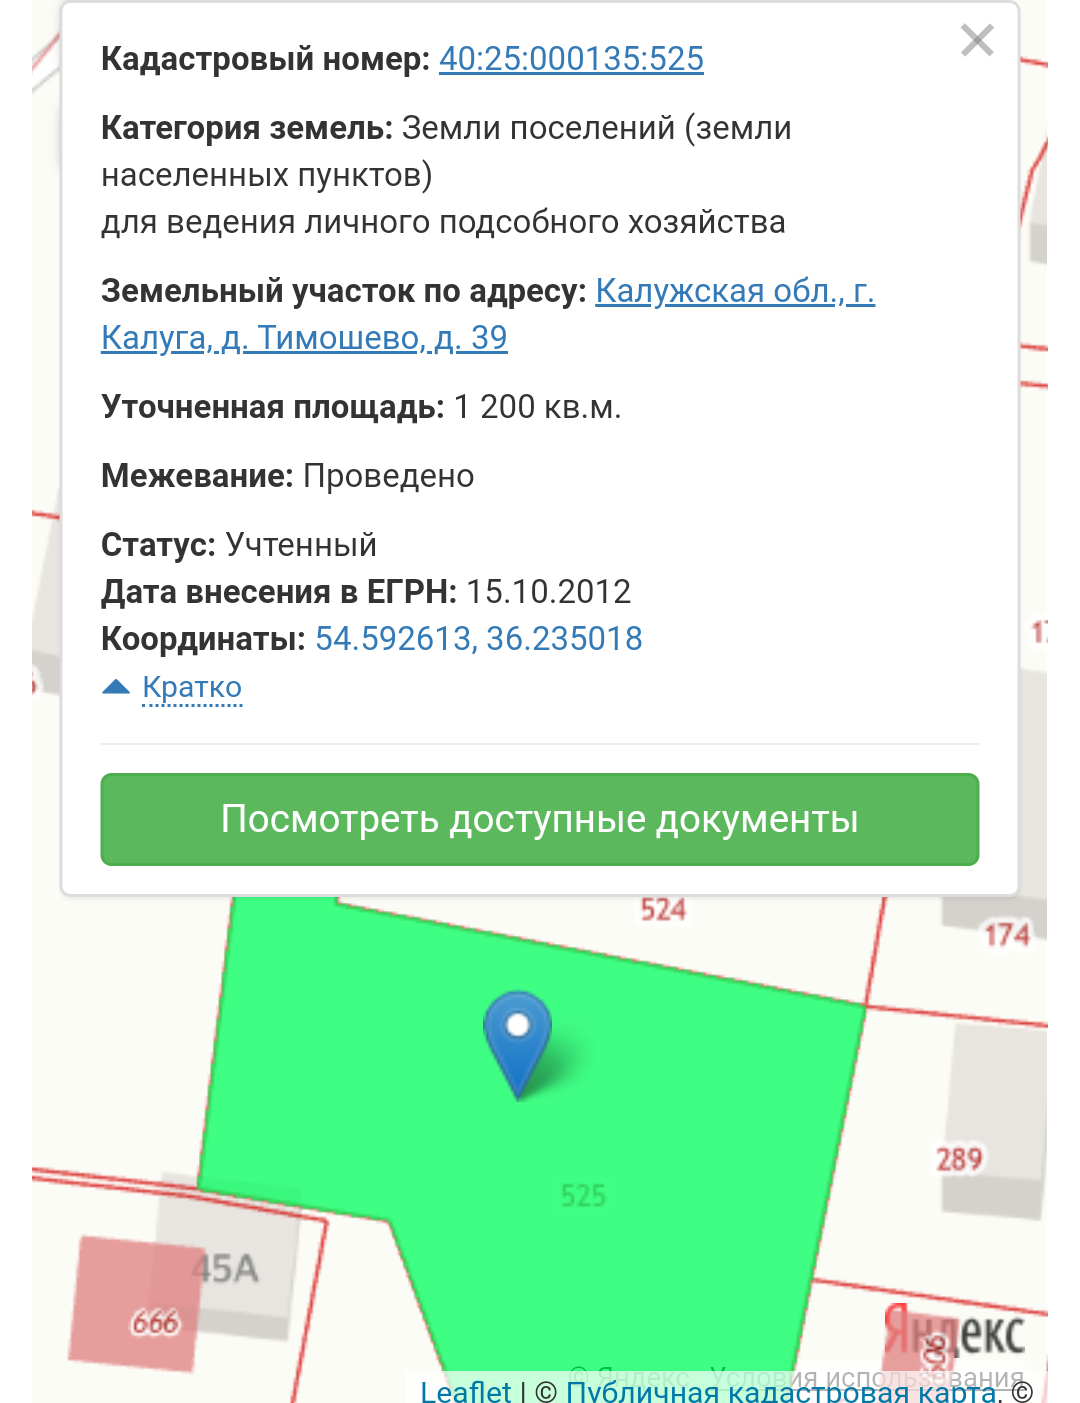 Срочно продается земельный участок 12 соток в Калуге  Деревня Тимошево Screenshot_2021-05-22-16-06-51-230_com.android.browser.png